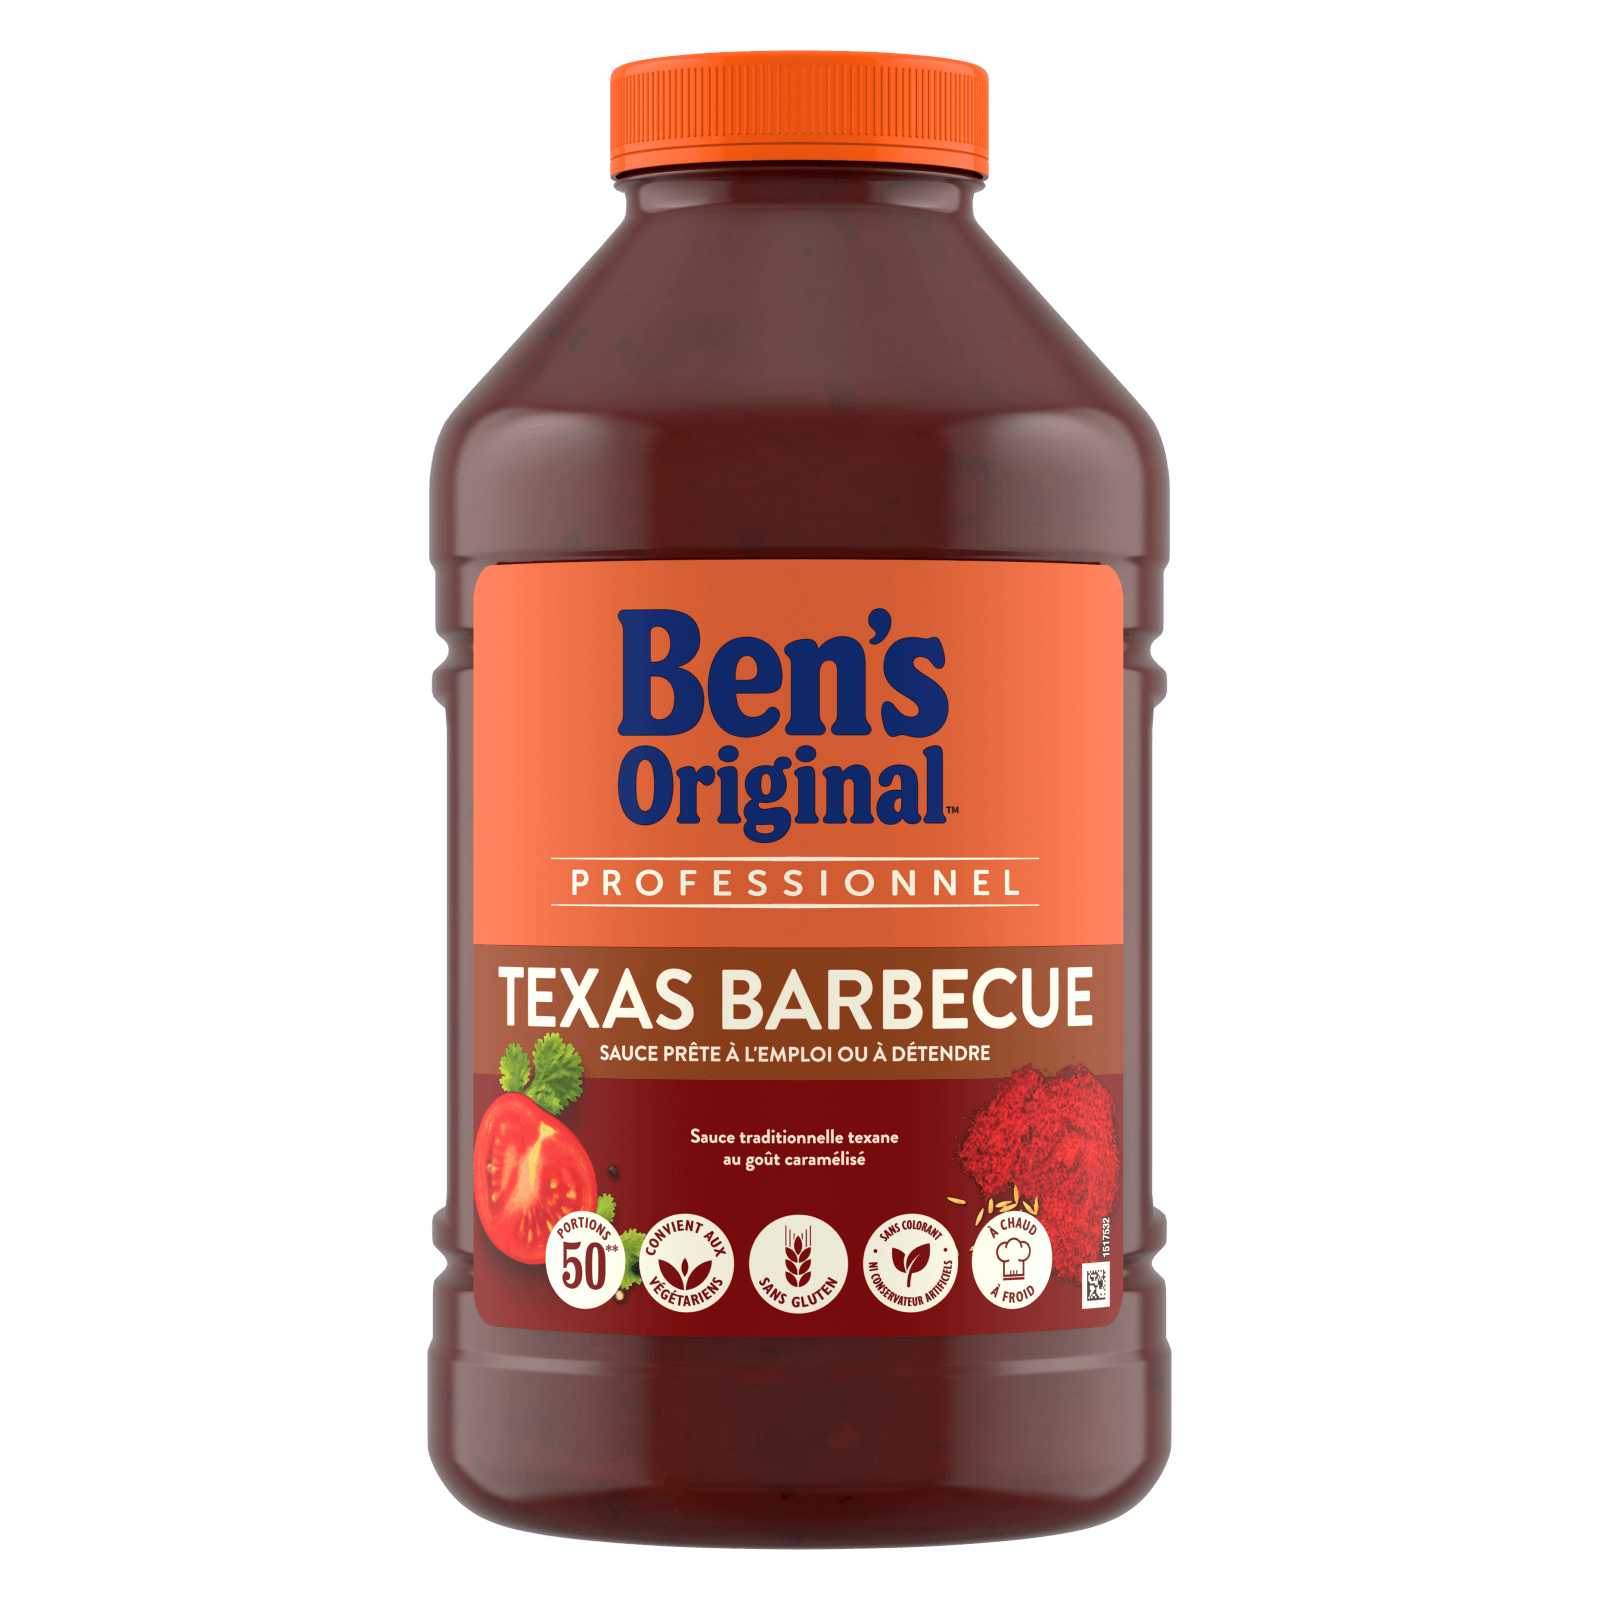 Ben's Original Sauce Texas Barbecue